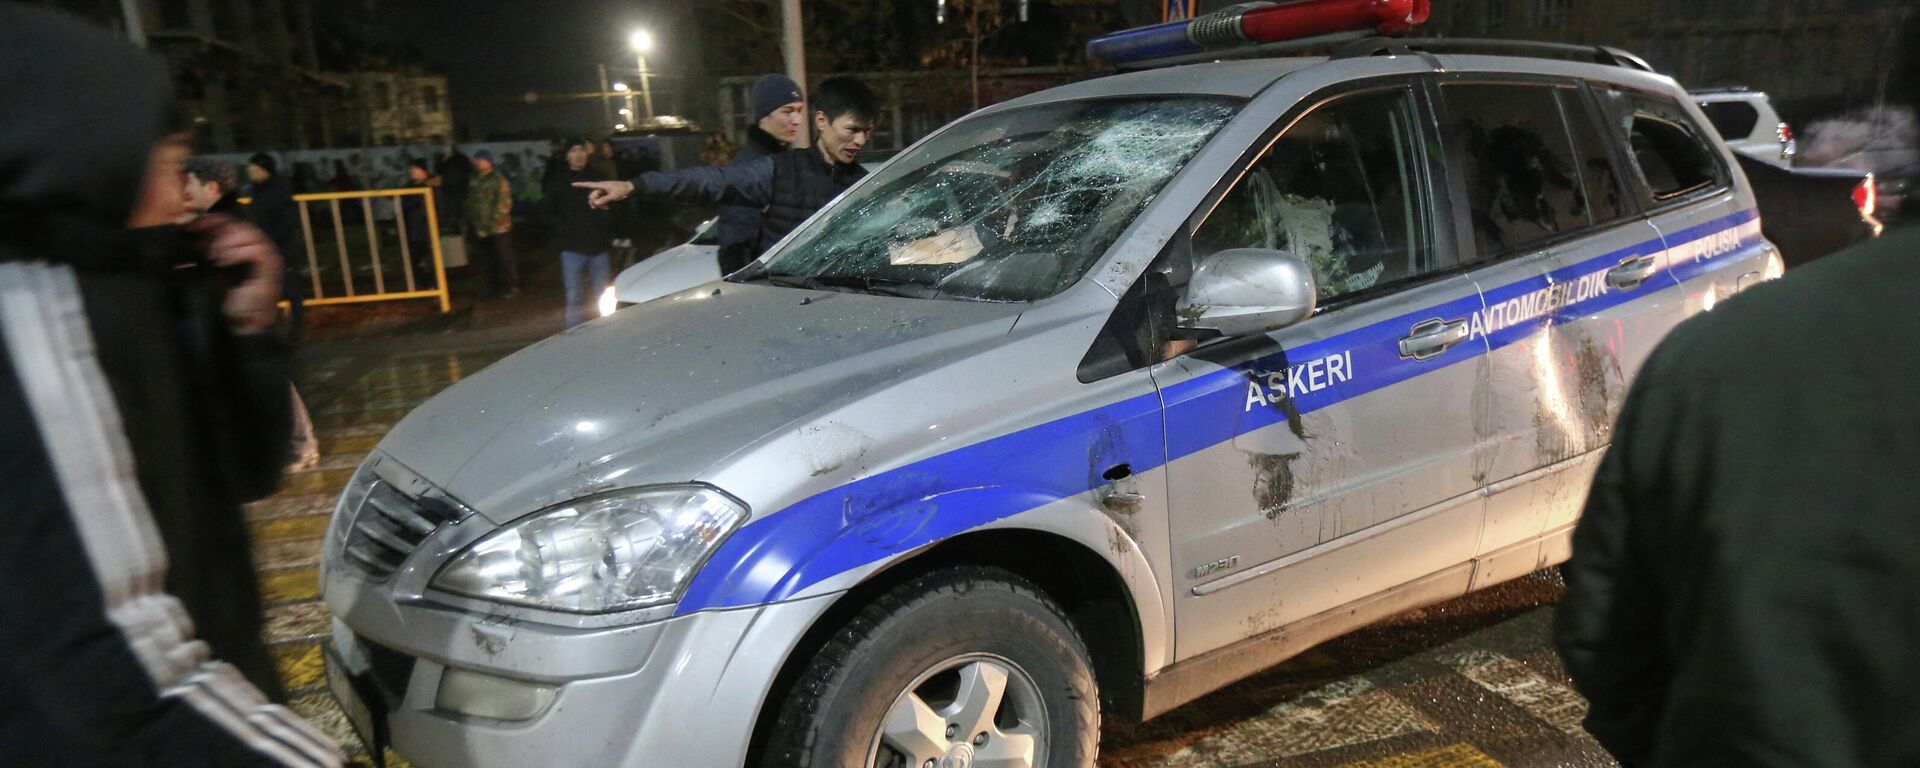 المتظاهرون يحاصرون سيارة شرطة خلال احتجاجات على ارتفاع أسعار الغاز في كازاخستان، يناير 2022. - سبوتنيك عربي, 1920, 05.01.2022